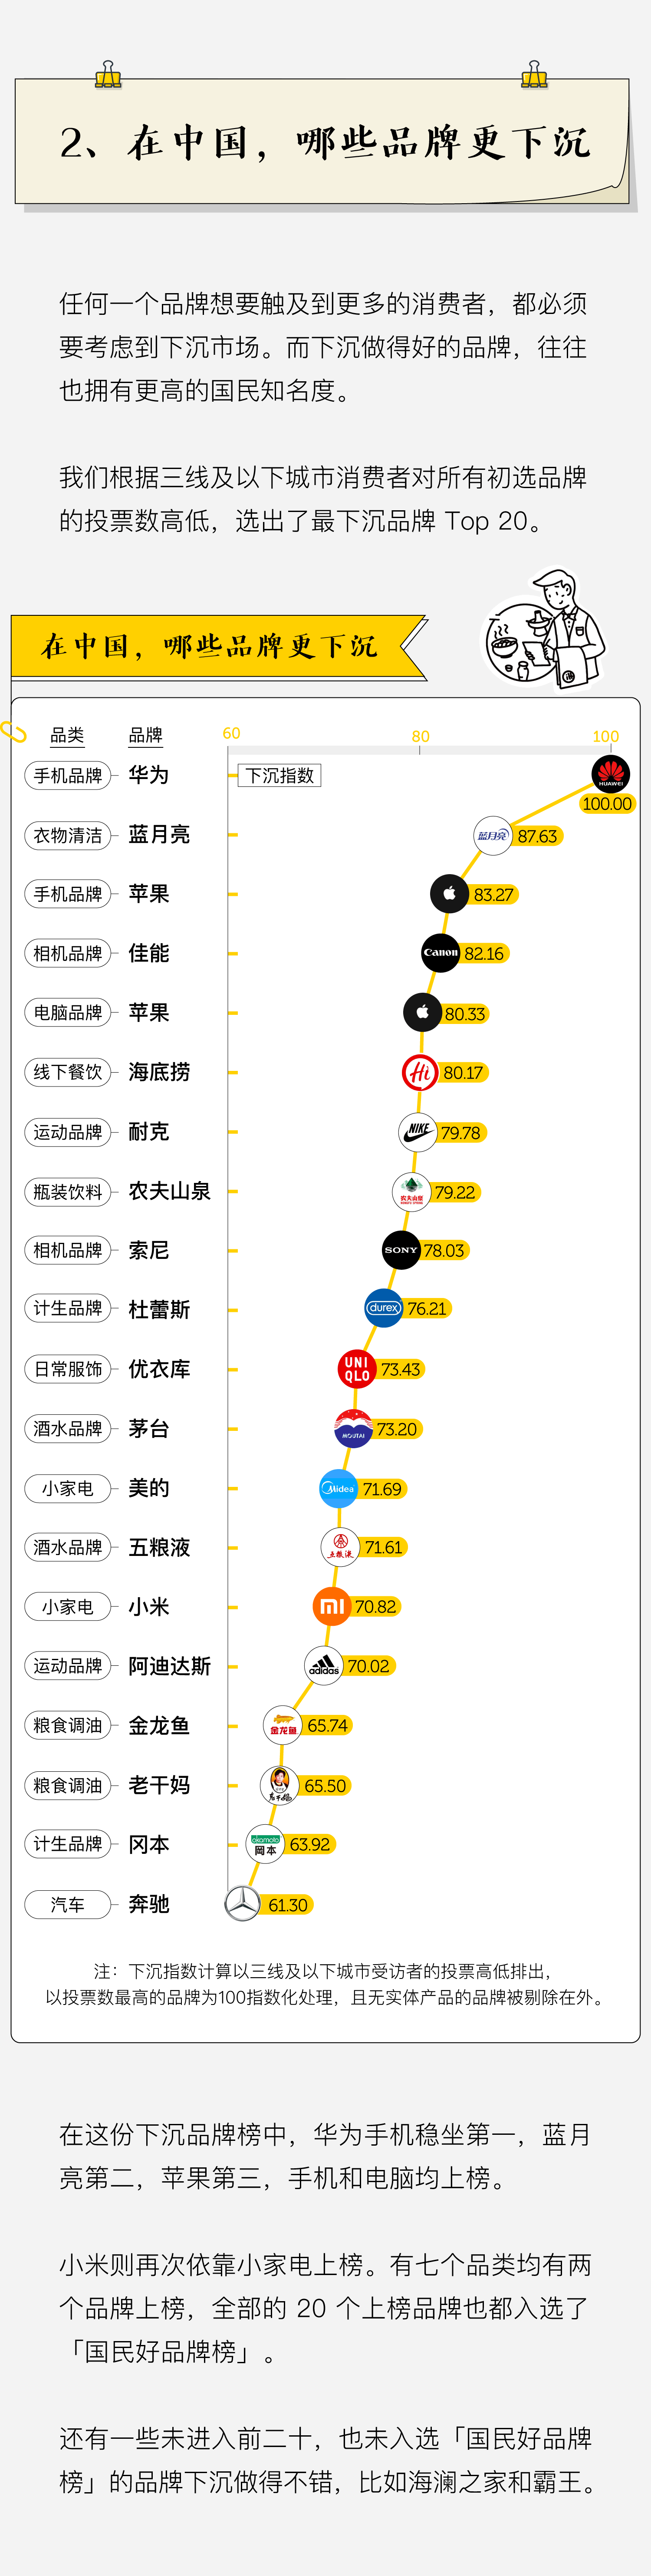 九州体育_
2020年中国人最爱国货 喜茶输给了它(图3)